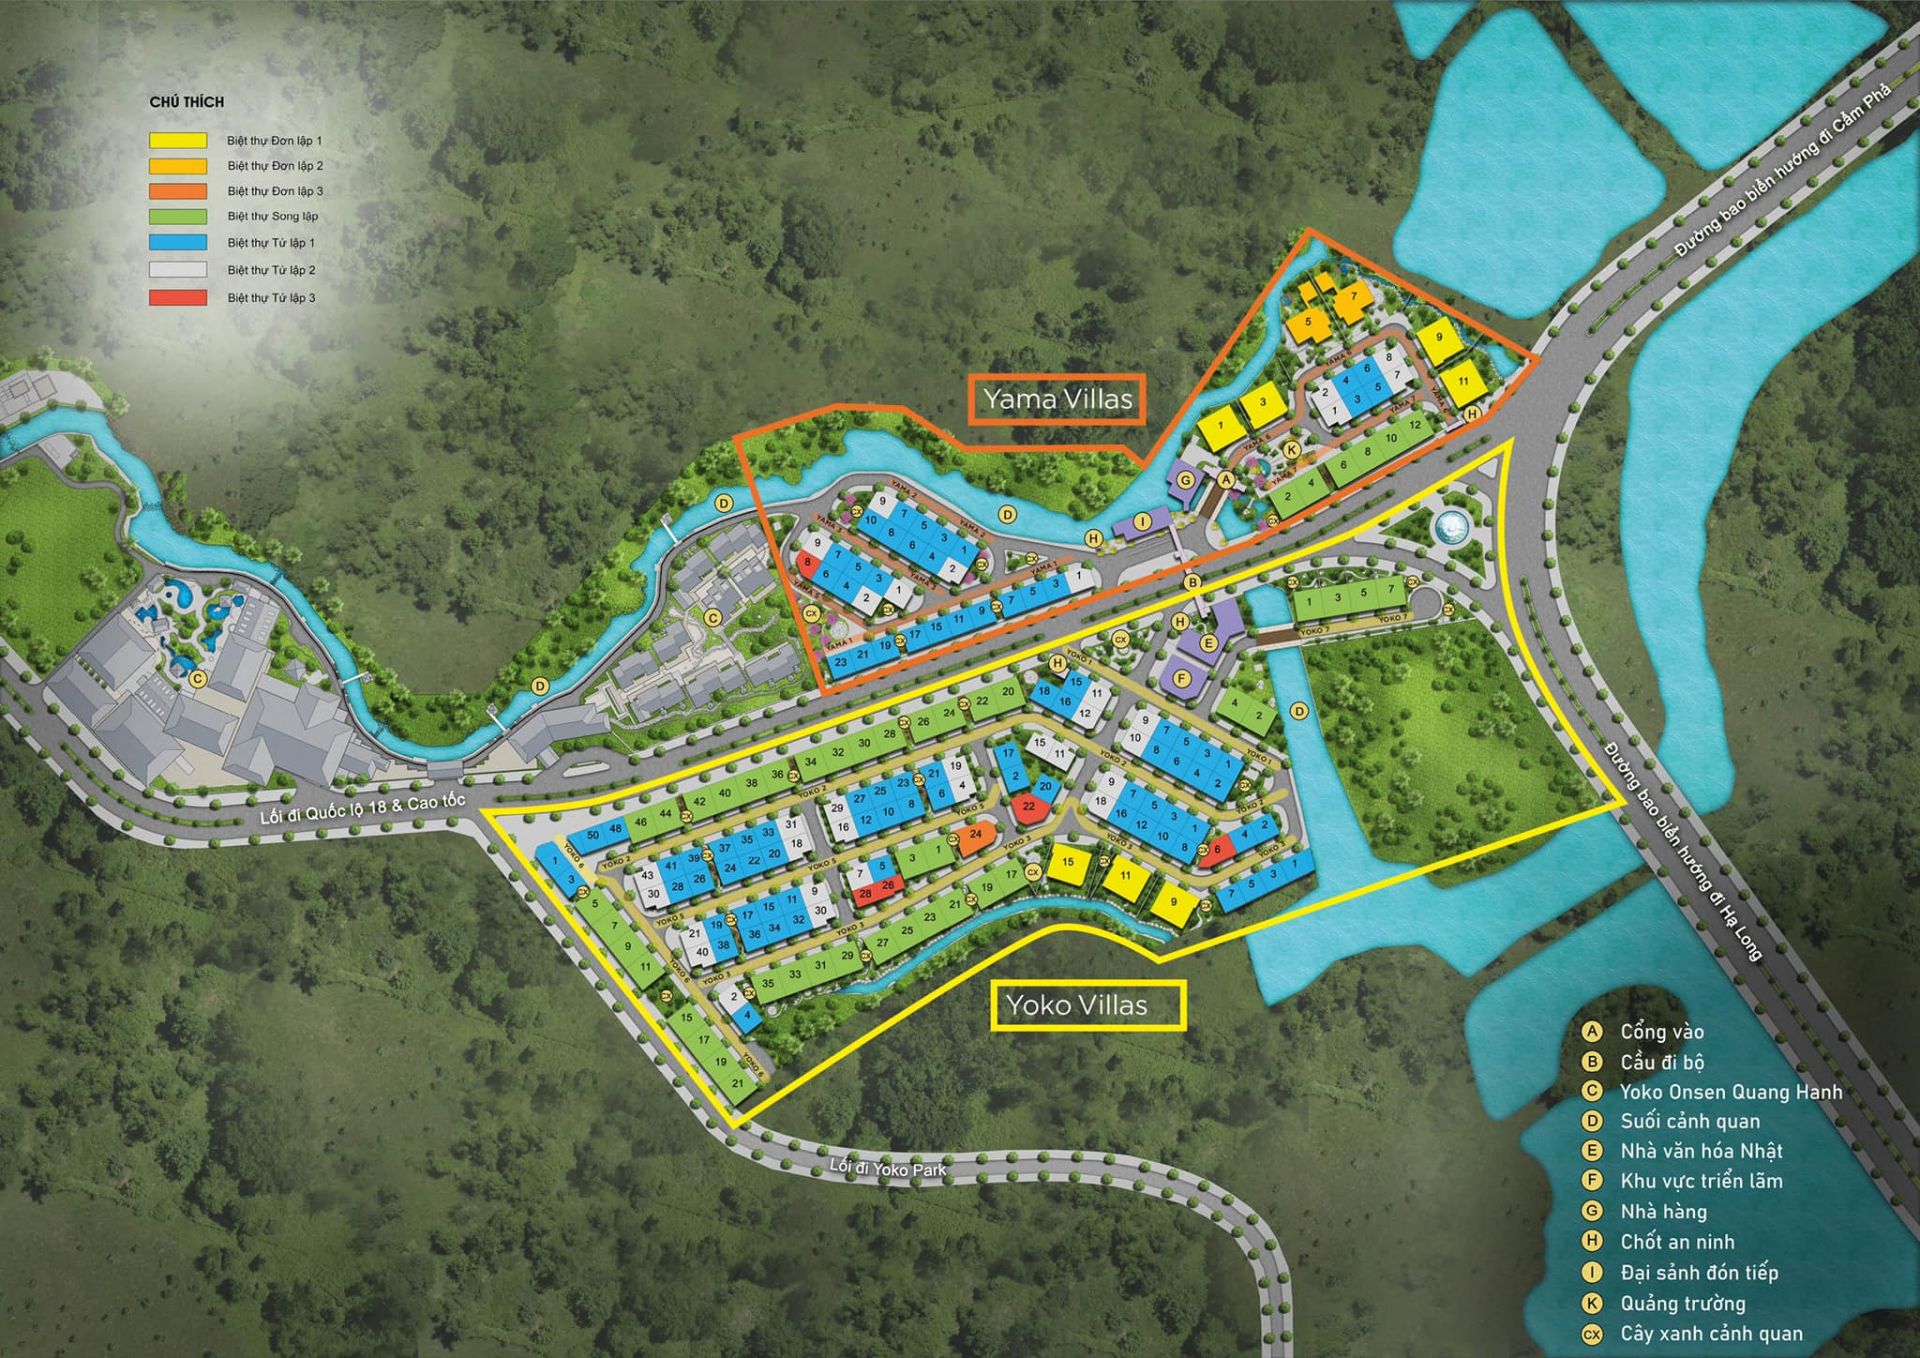 Dự án gồm 2 phân khu Yoko Villas và Yamas Villas